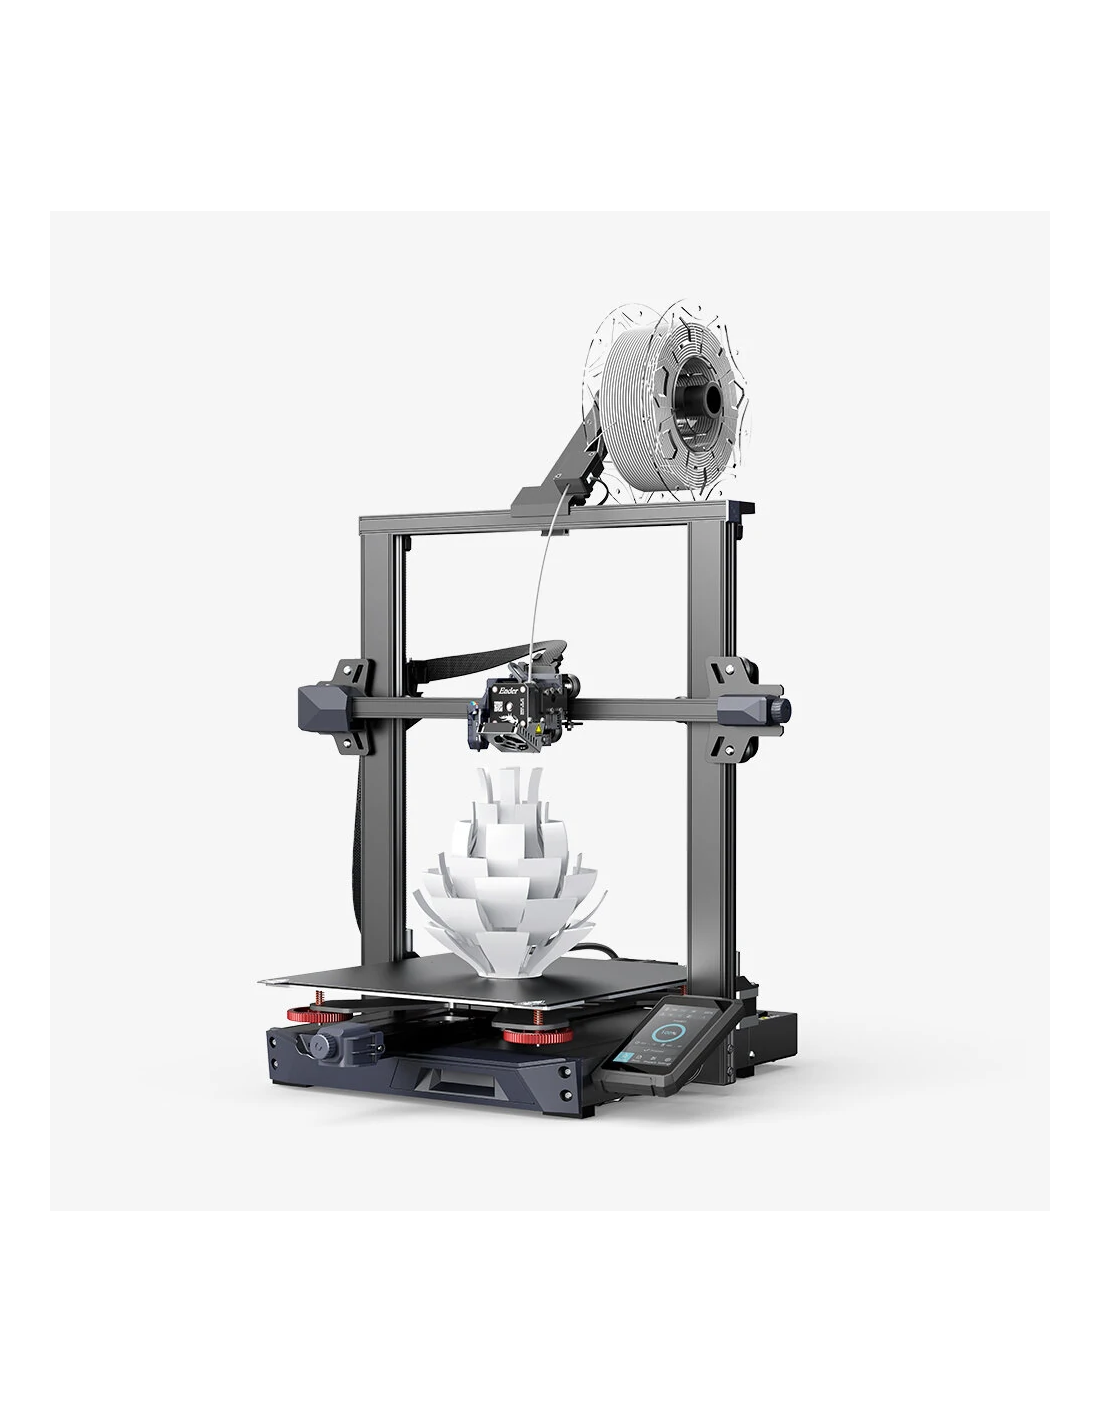 Imprimante 3D Creality Ender-3 S1 Plus